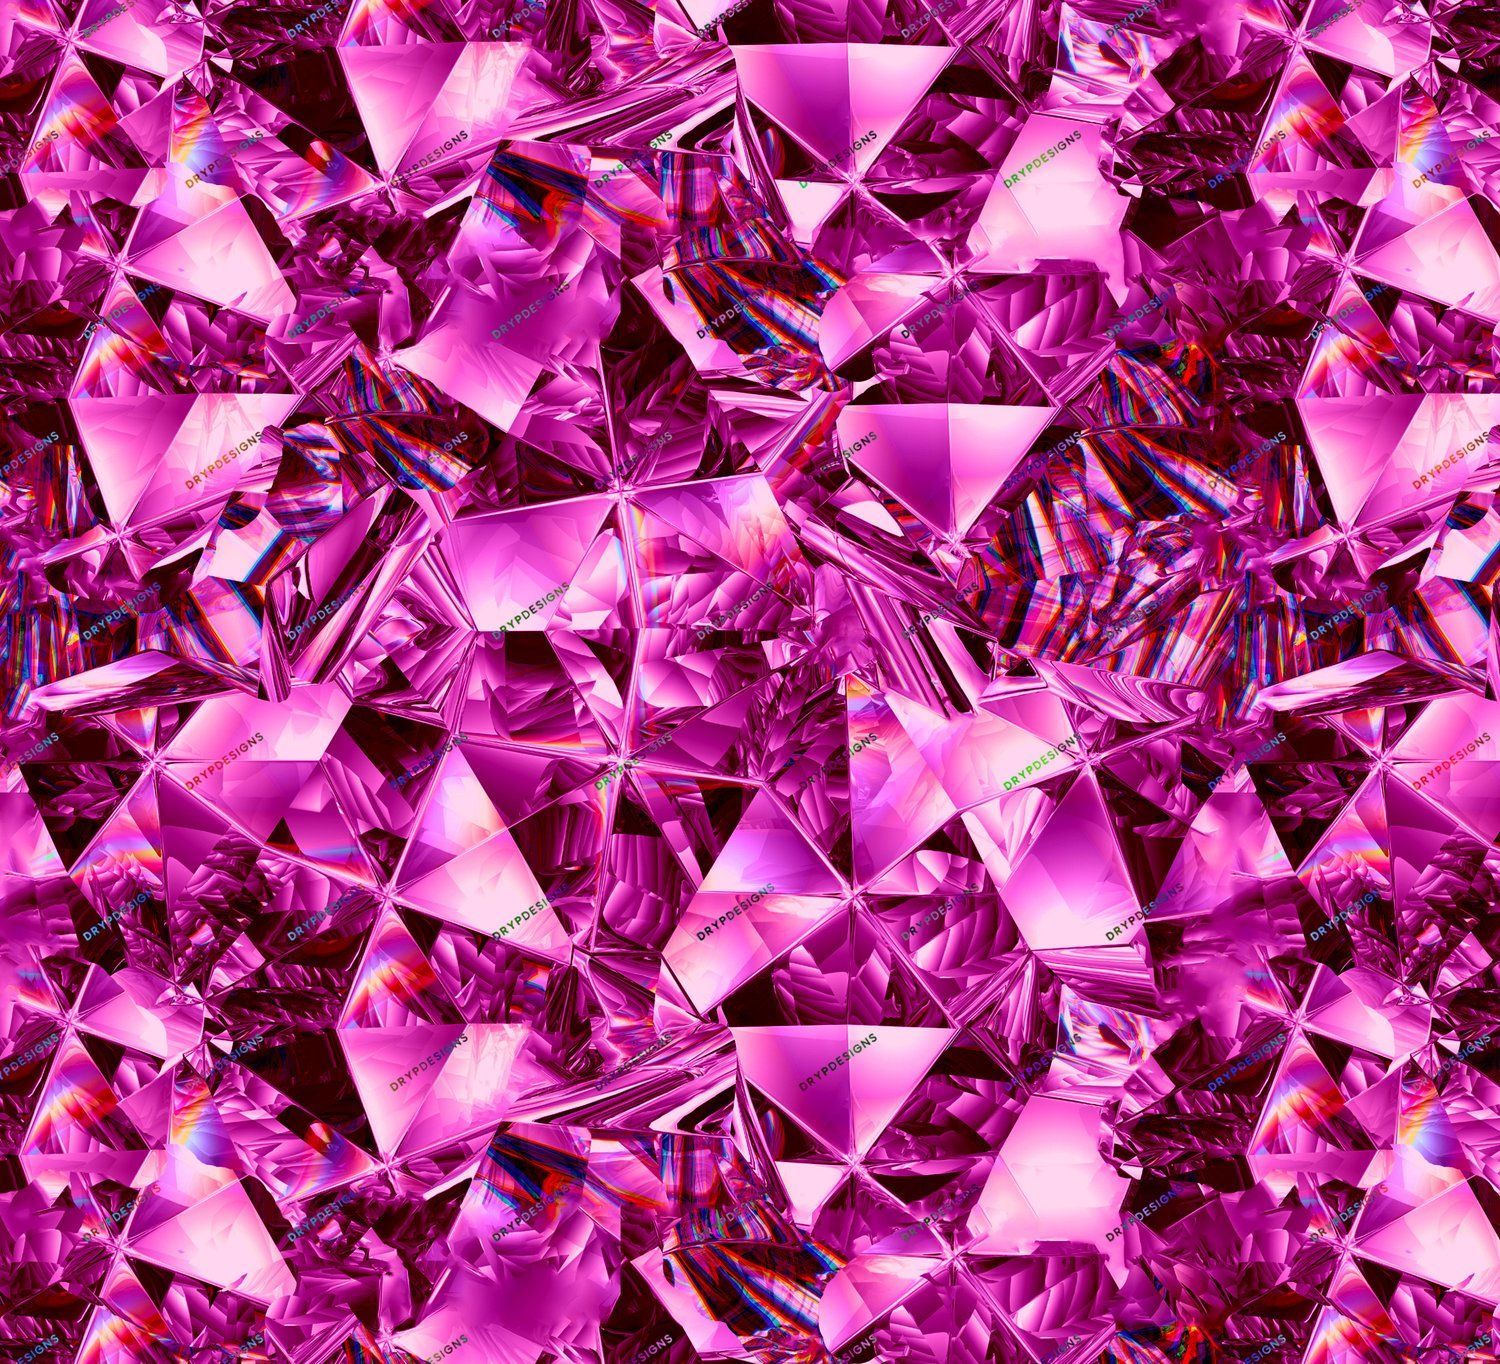 A pattern of pink and purple diamonds - Diamond